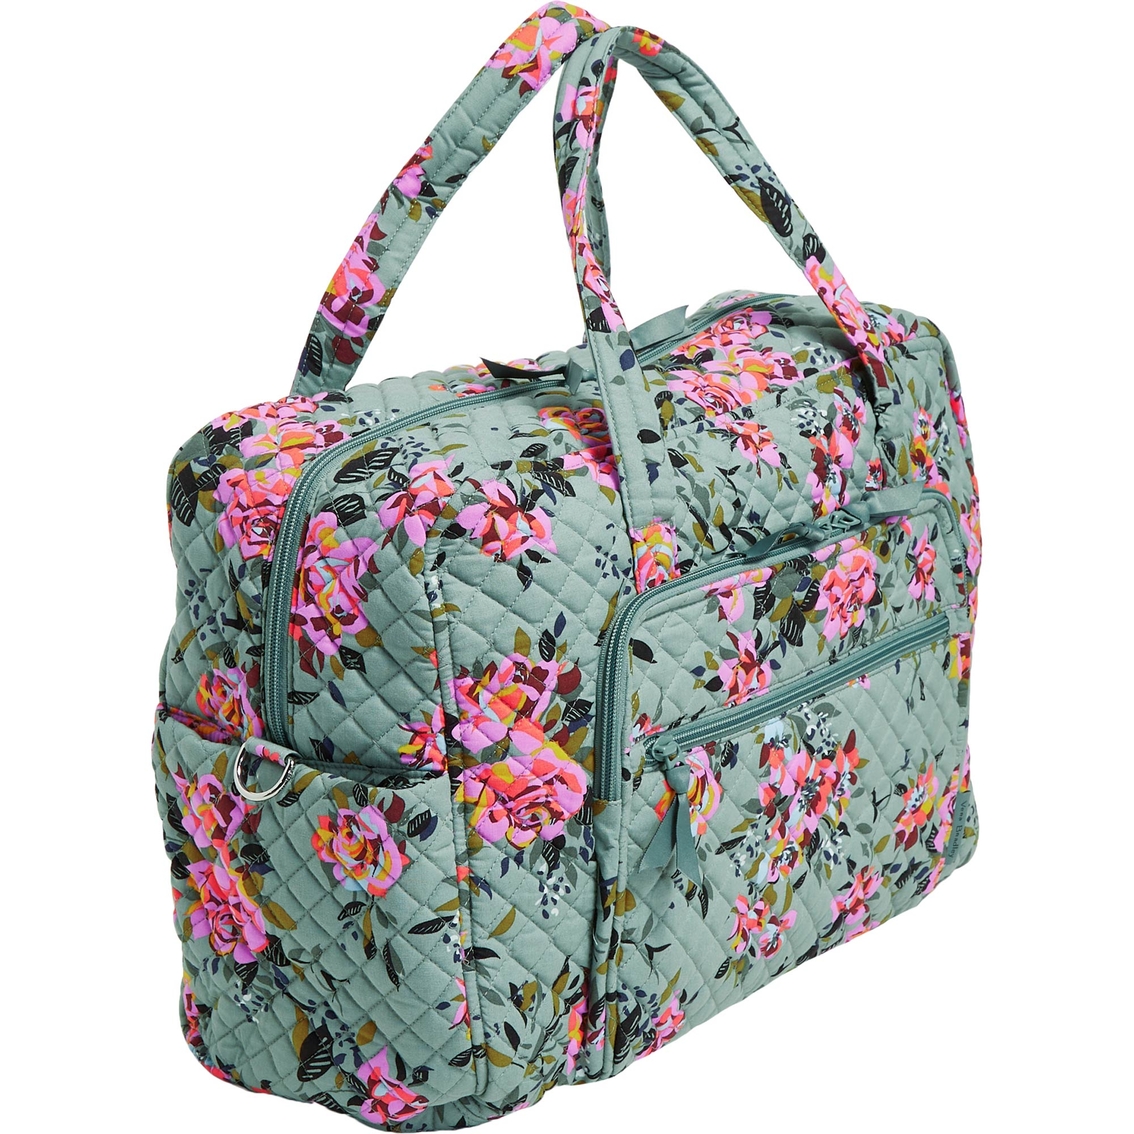 Vera Bradley Rosy Outlook Weekender Travel Bag | Luggage | Clothing ...